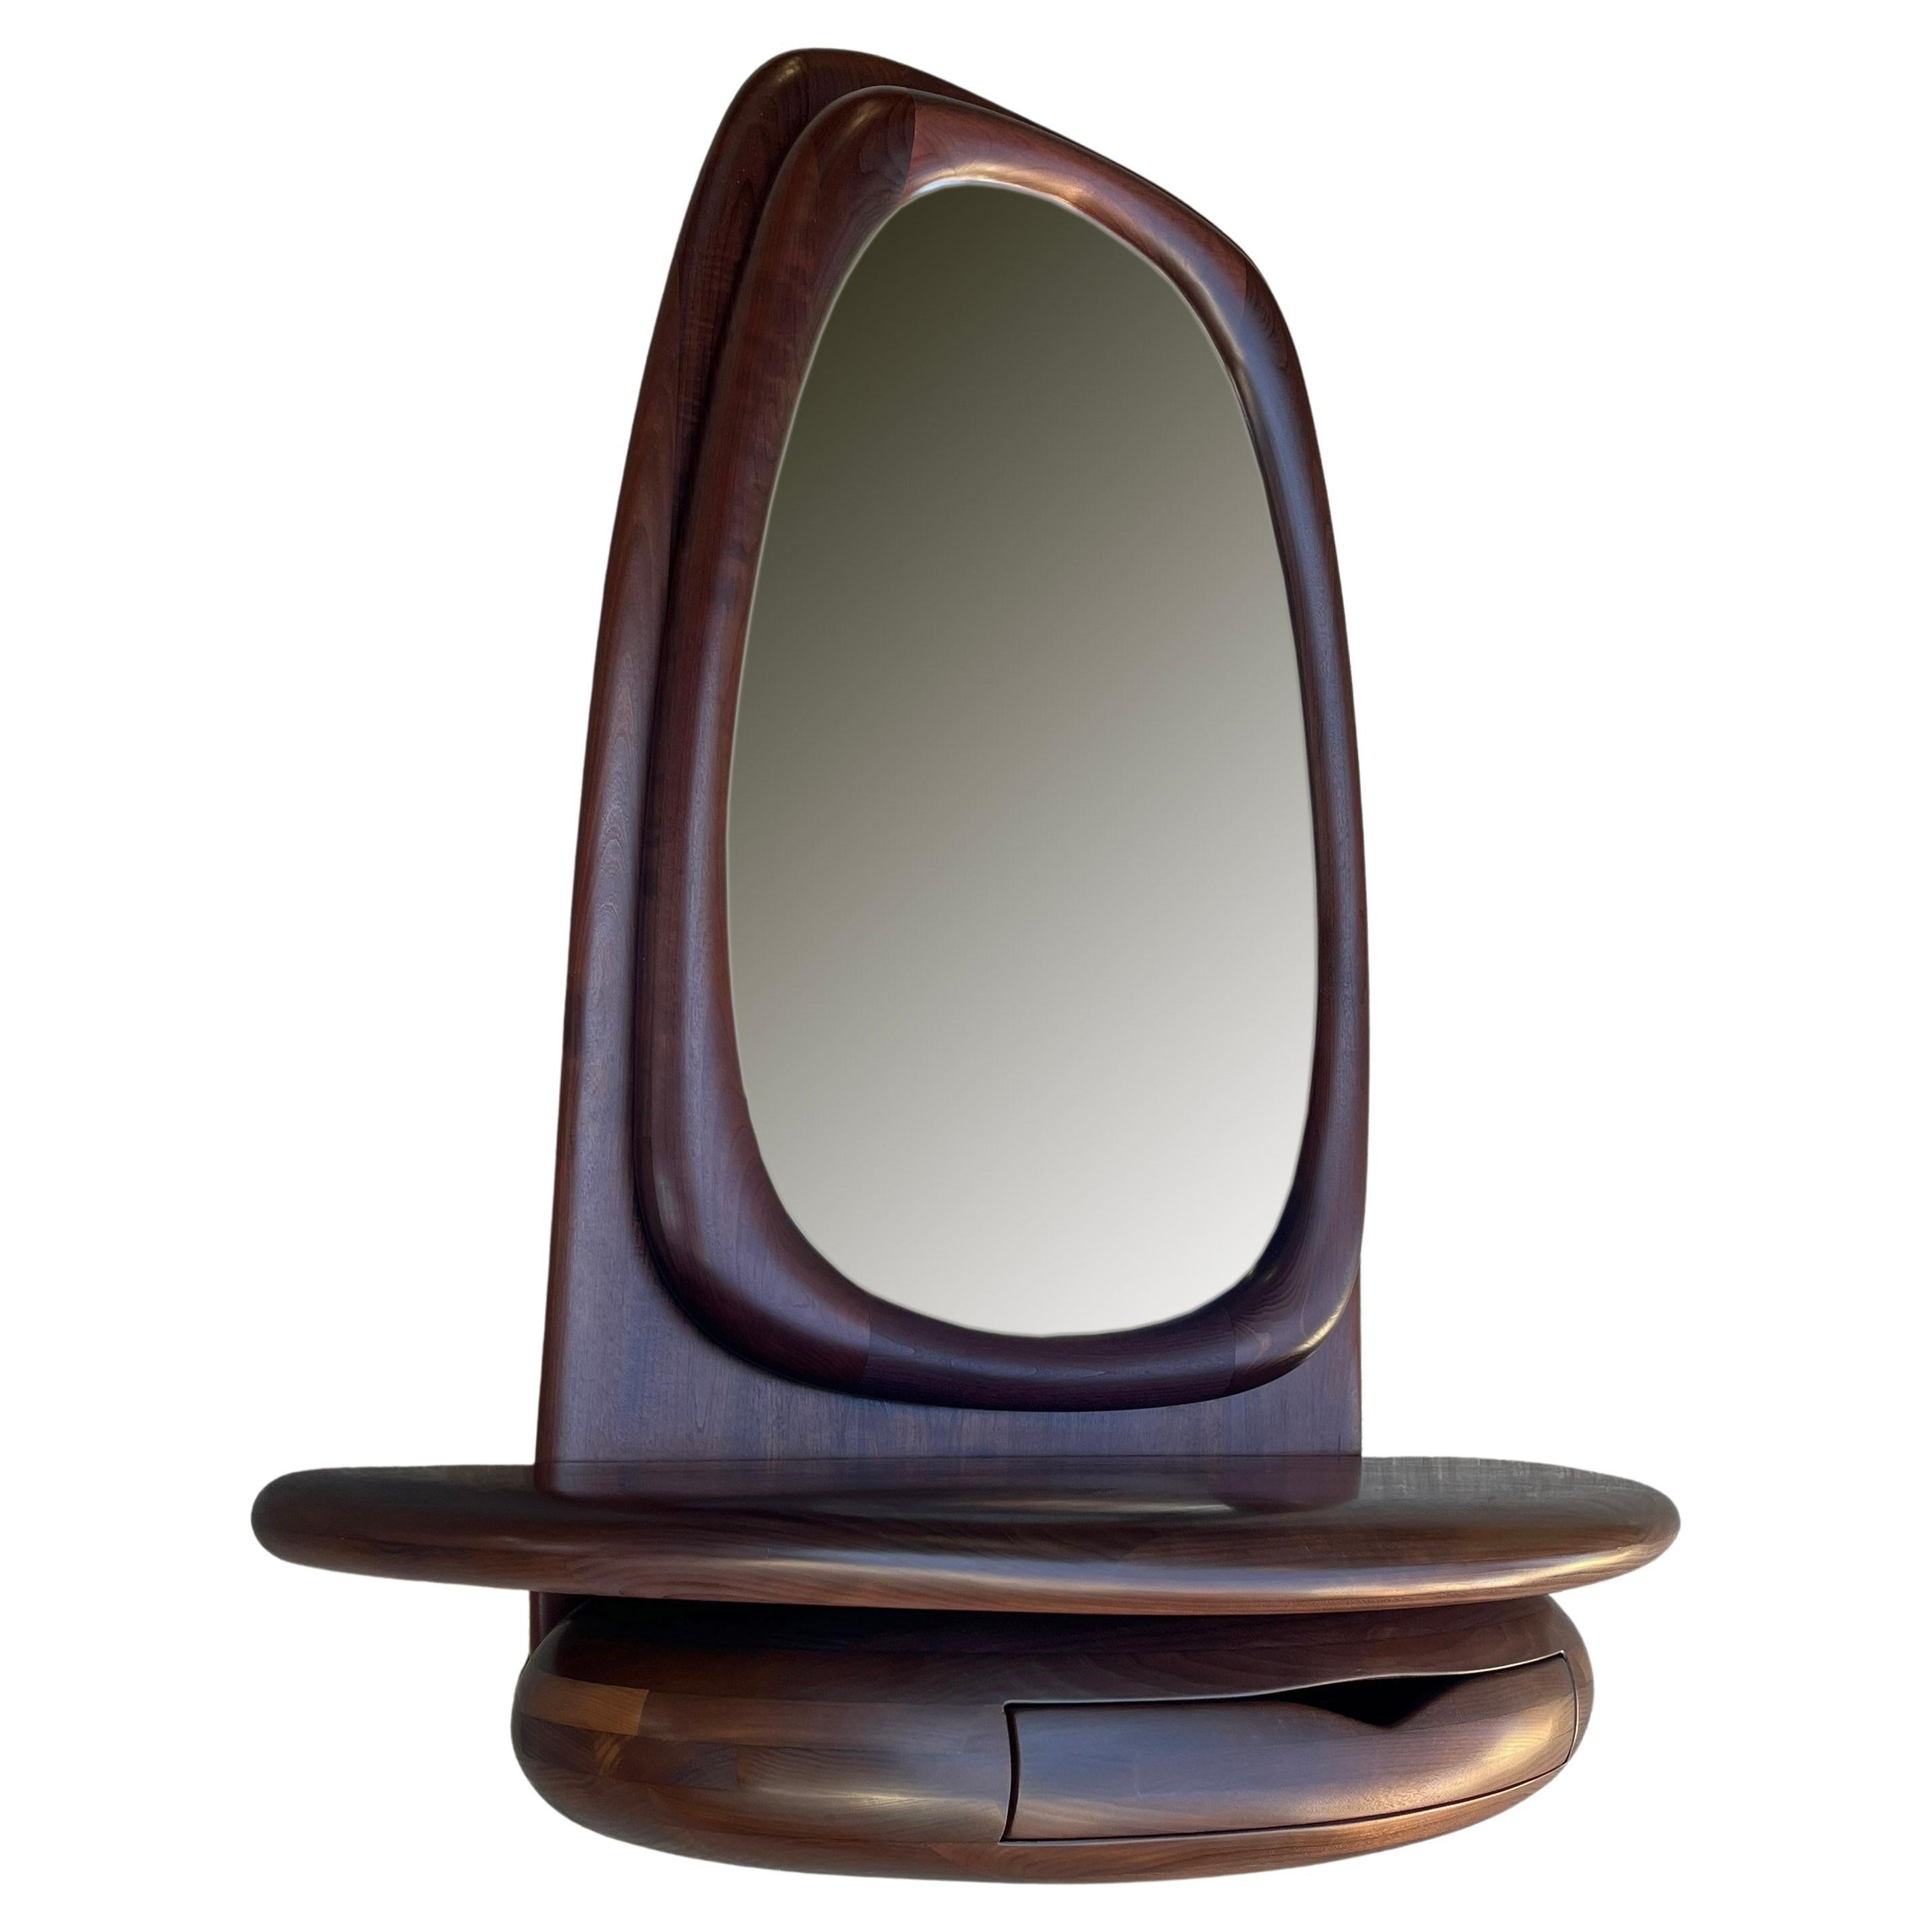 Nous vous proposons ce miroir magnifiquement sculpté par Dean Santner. Les créations du maître-artisan Dean Santner s'inscrivent dans le mouvement de l'American Modern Craft aux côtés de Wendell Castle, Nakashima, Phillip Powell et faisaient partie